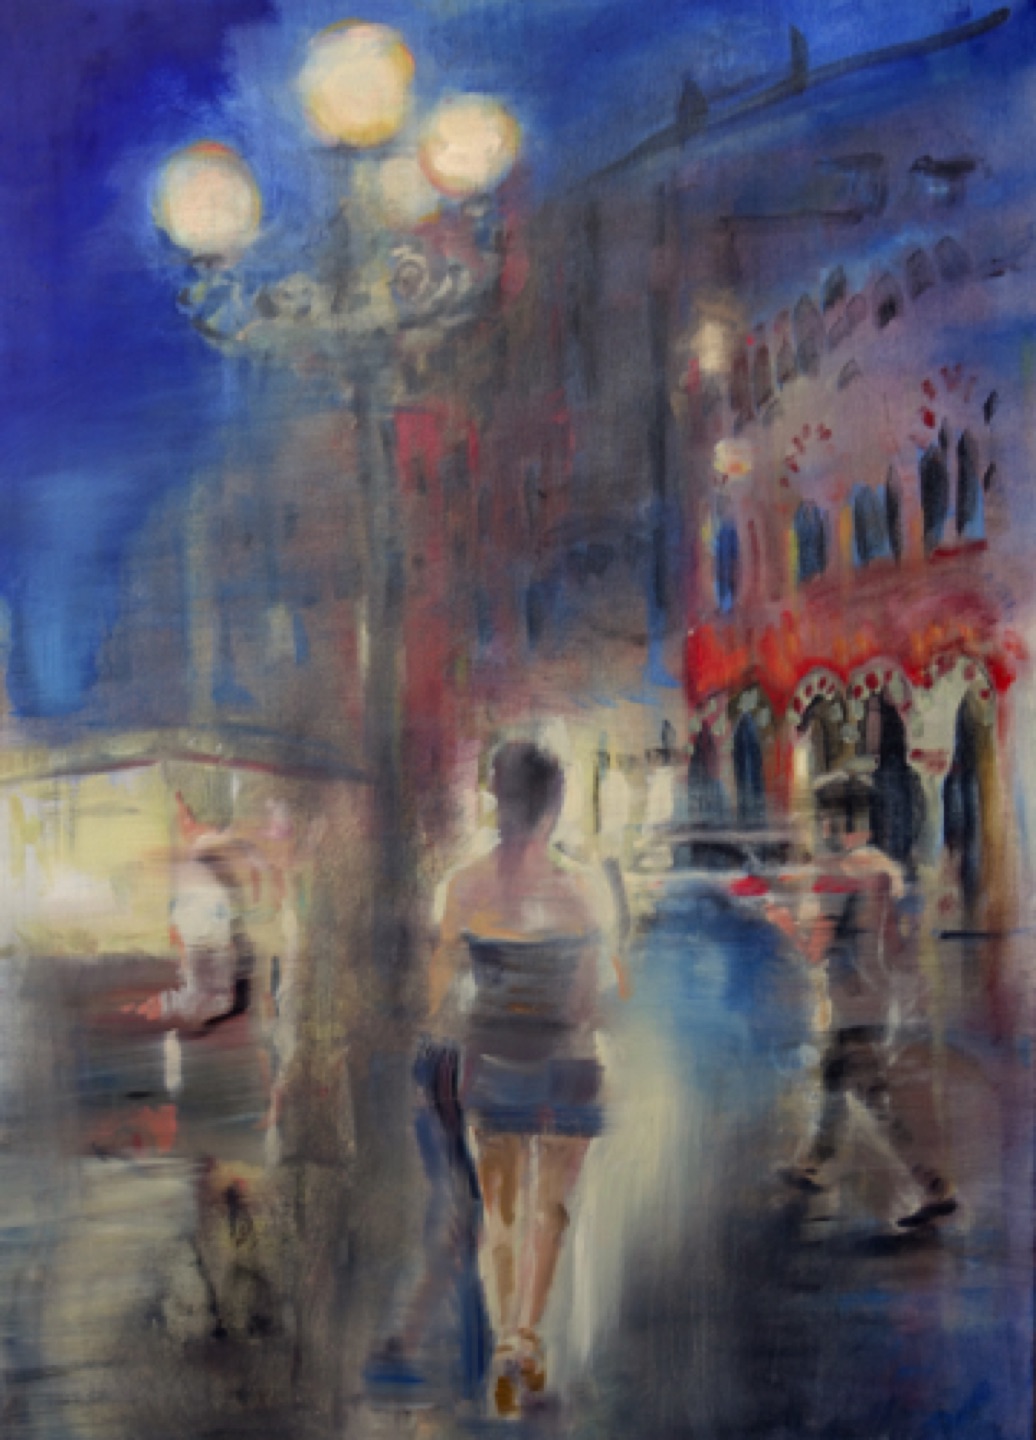 Gregg Chadwick
Piazza Erbe - Verona
42"x32" oil on canvas 2015
Private Collection, Verona, Italy